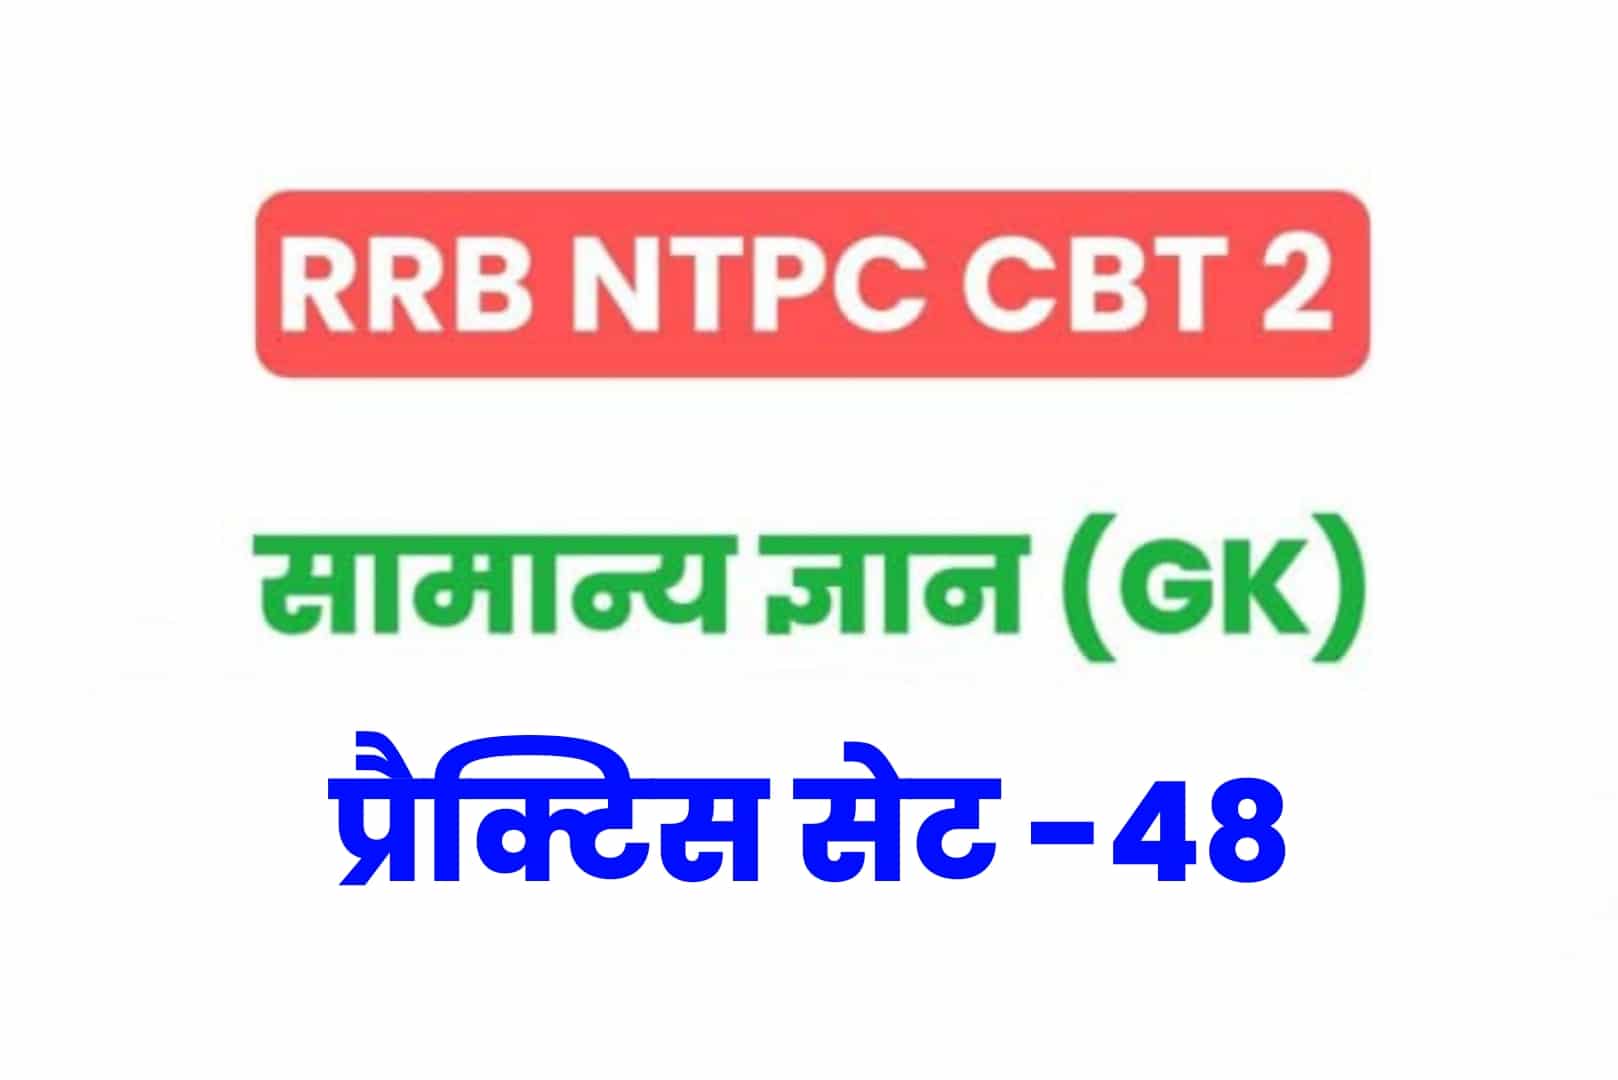 RRB NTPC CBT 2 GK प्रैक्टिस सेट 48: परीक्षा में अच्छे परिणाम के लिए जरूर पढ़ें सामान्य ज्ञान के 25 मुख्य MCQ